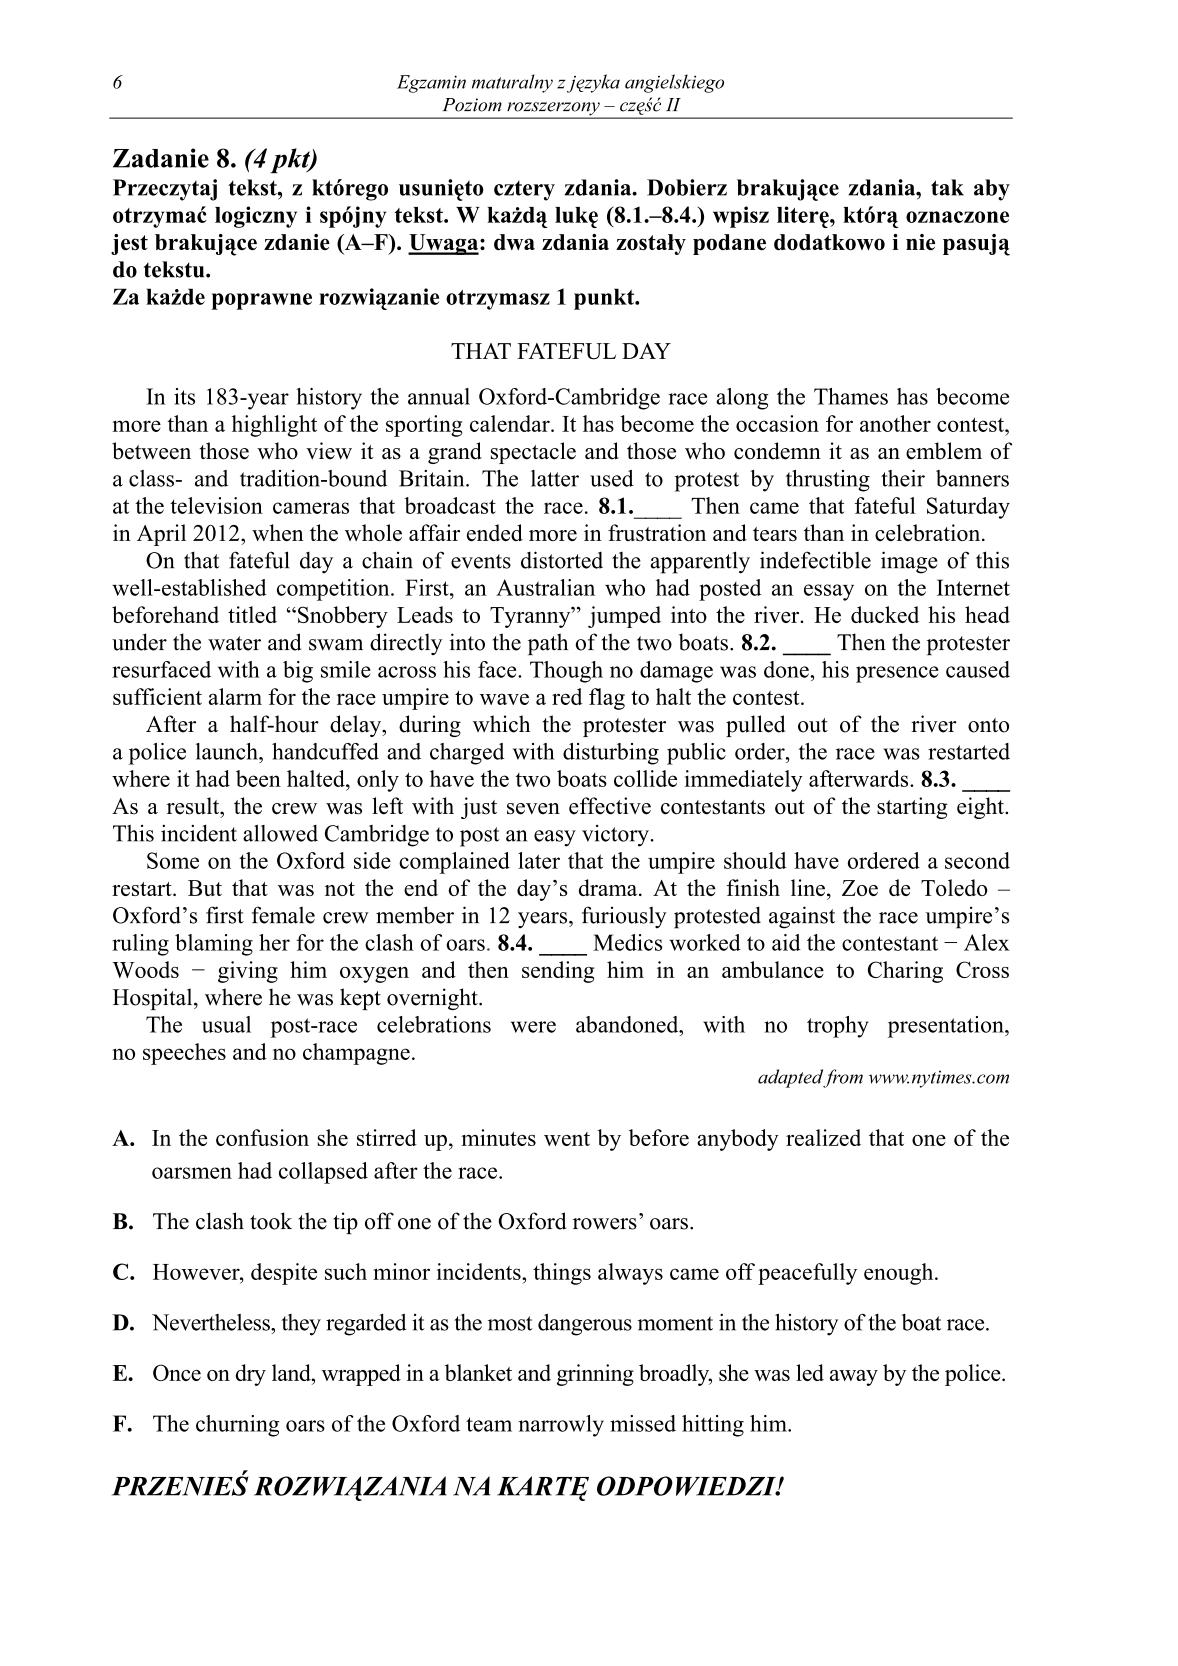 pytania-jezyk-angielski-poziom-rozszerzony-czesc-II-matura-2014-str.6